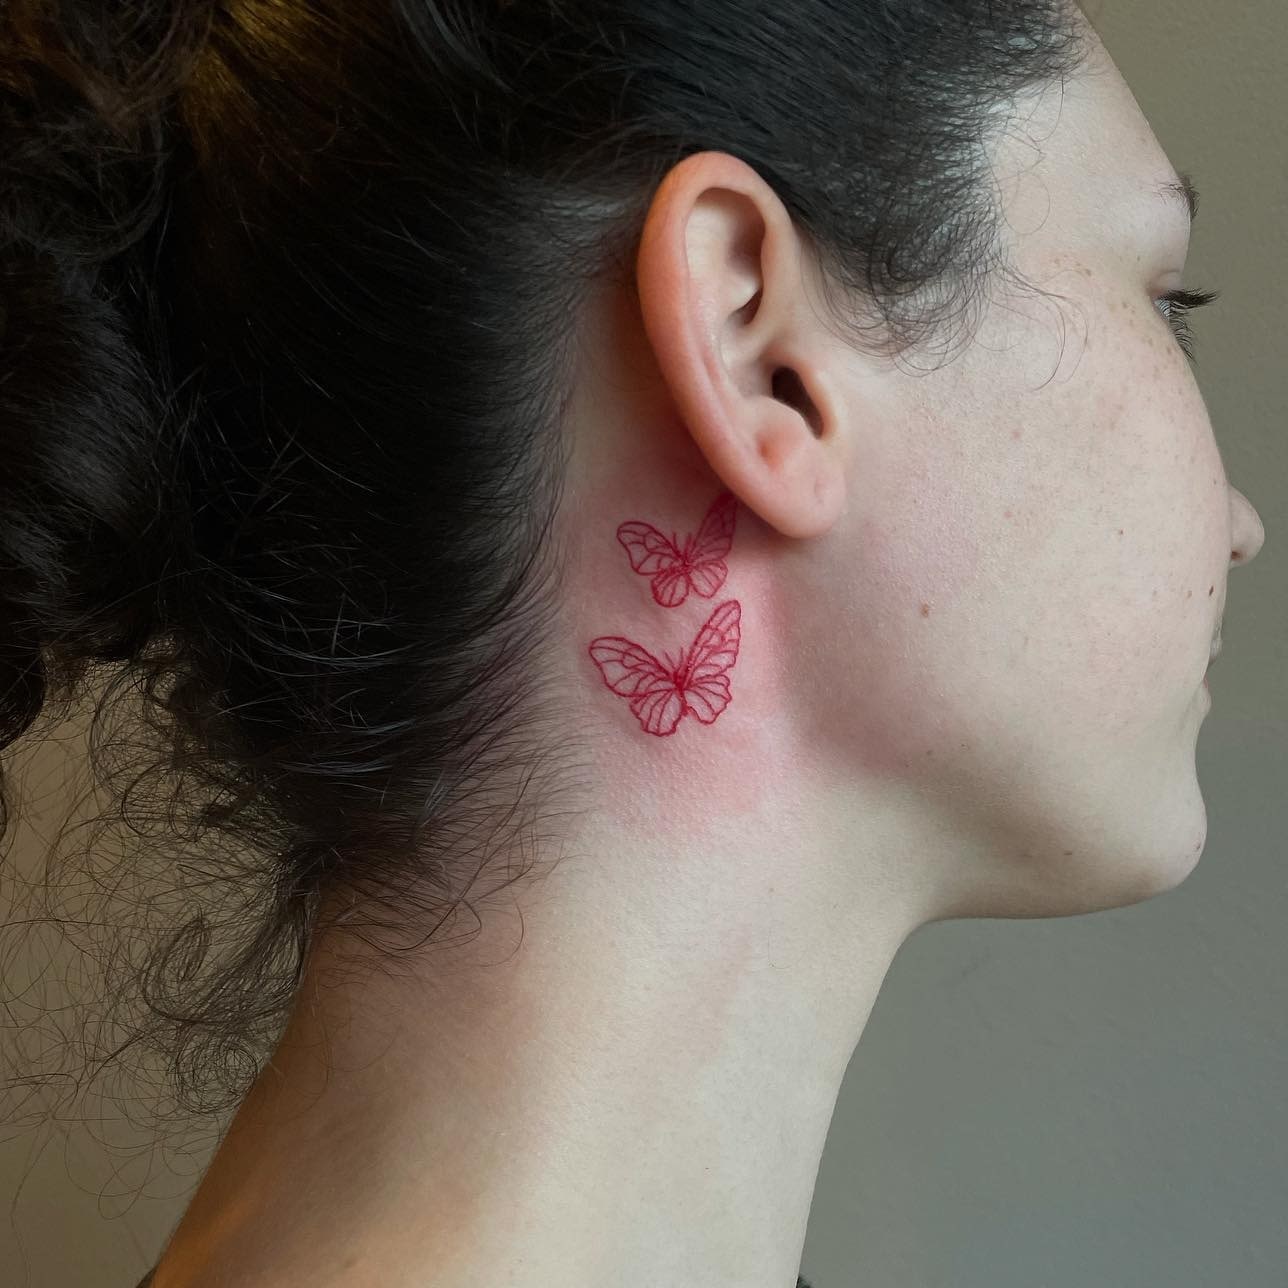 Red line butterflies tattoo behind ear